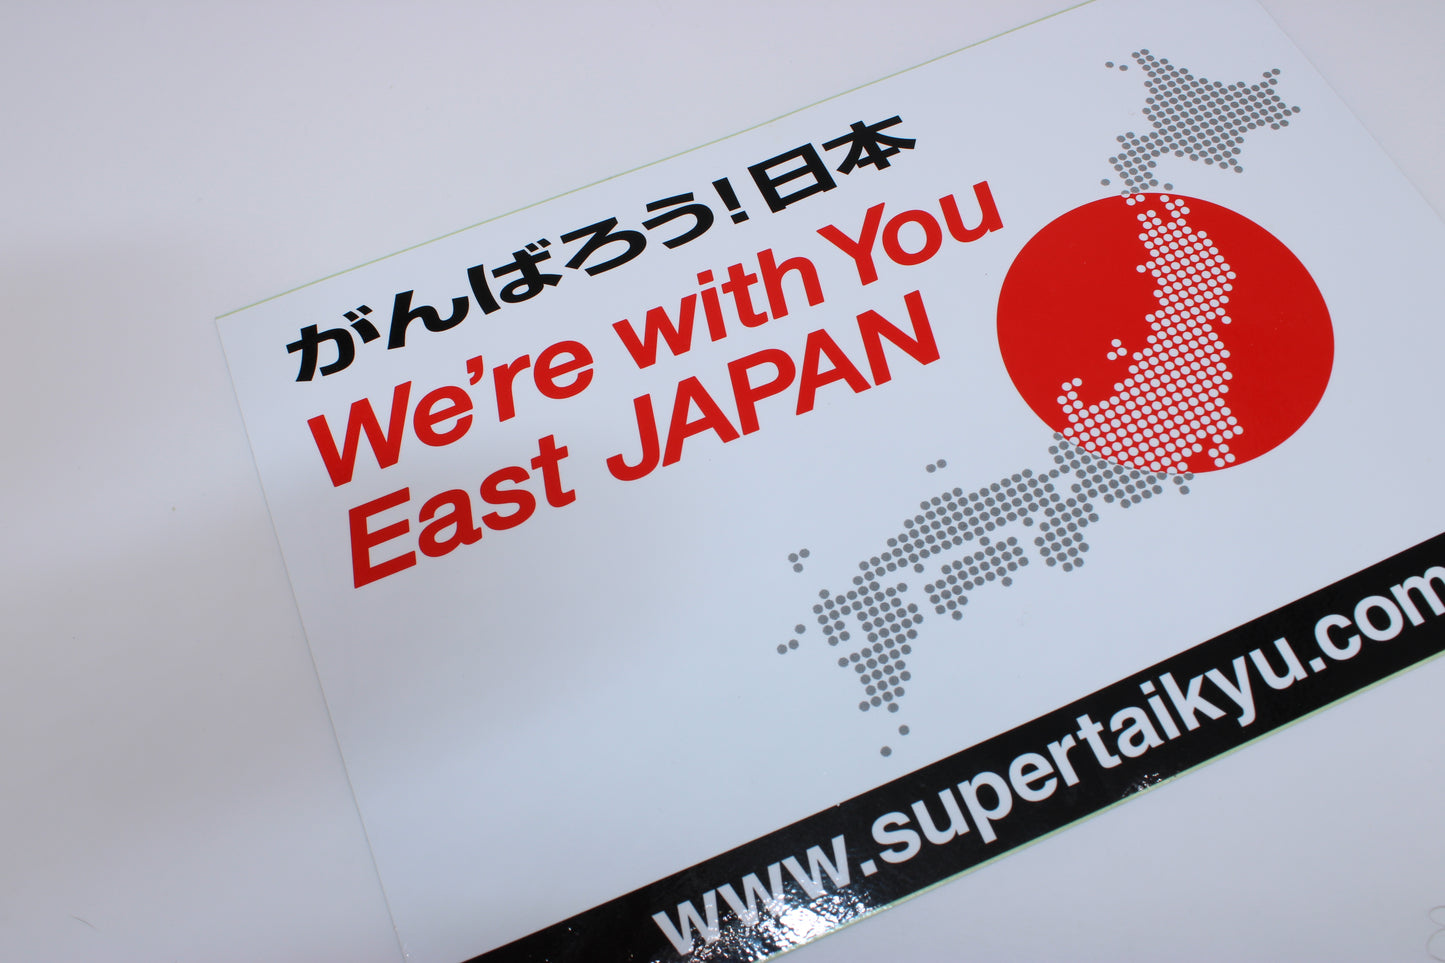 SuperTaiku , East Japan support sticker